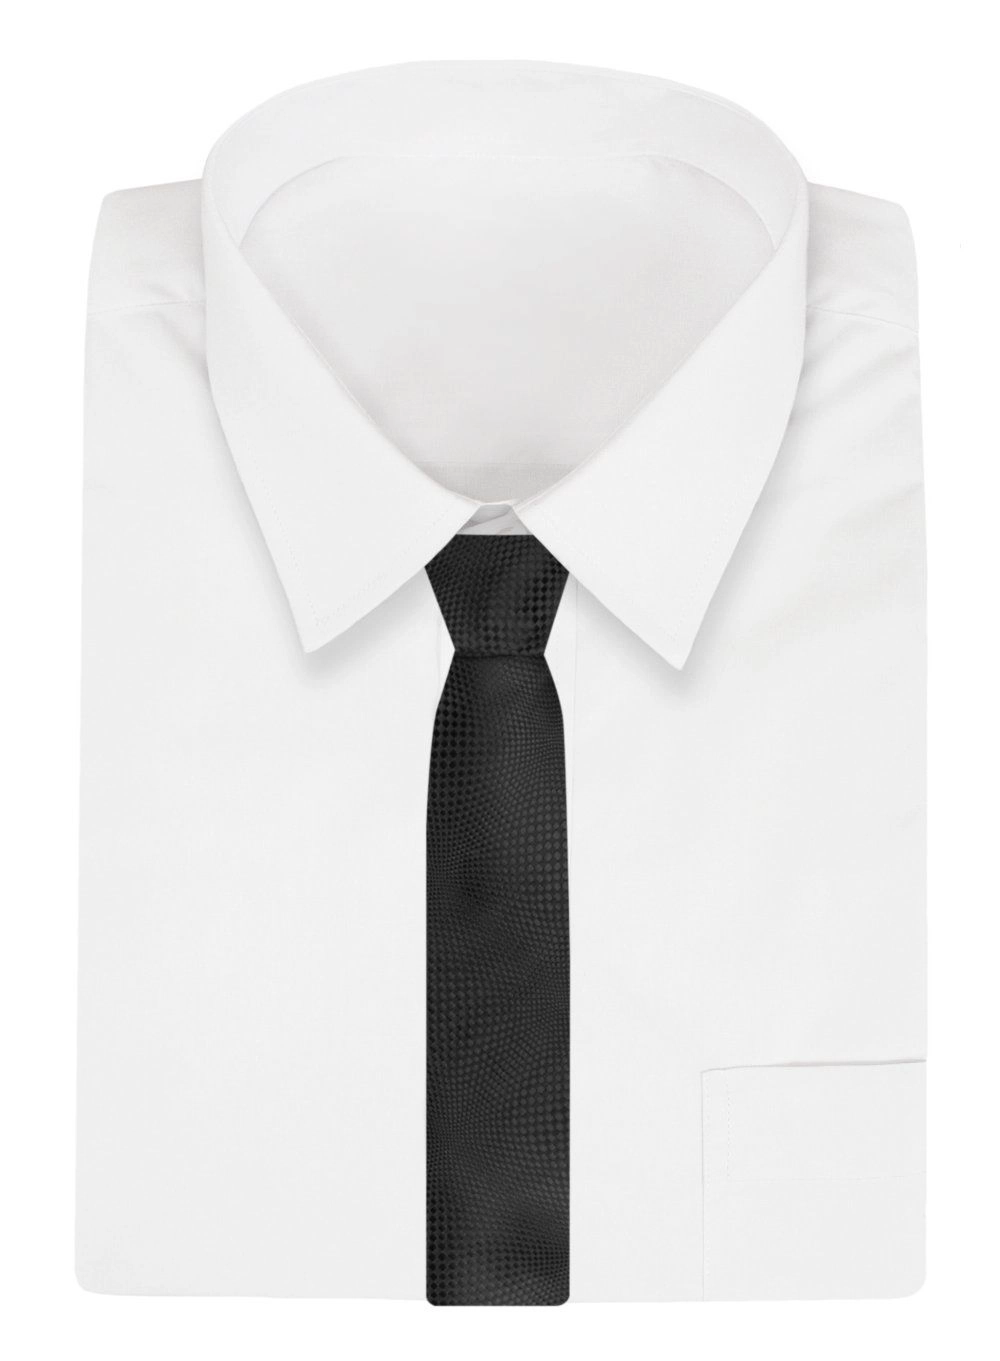 Krawat Męski, Klasyczny - ALTIES - Czarny, Wzór 3D